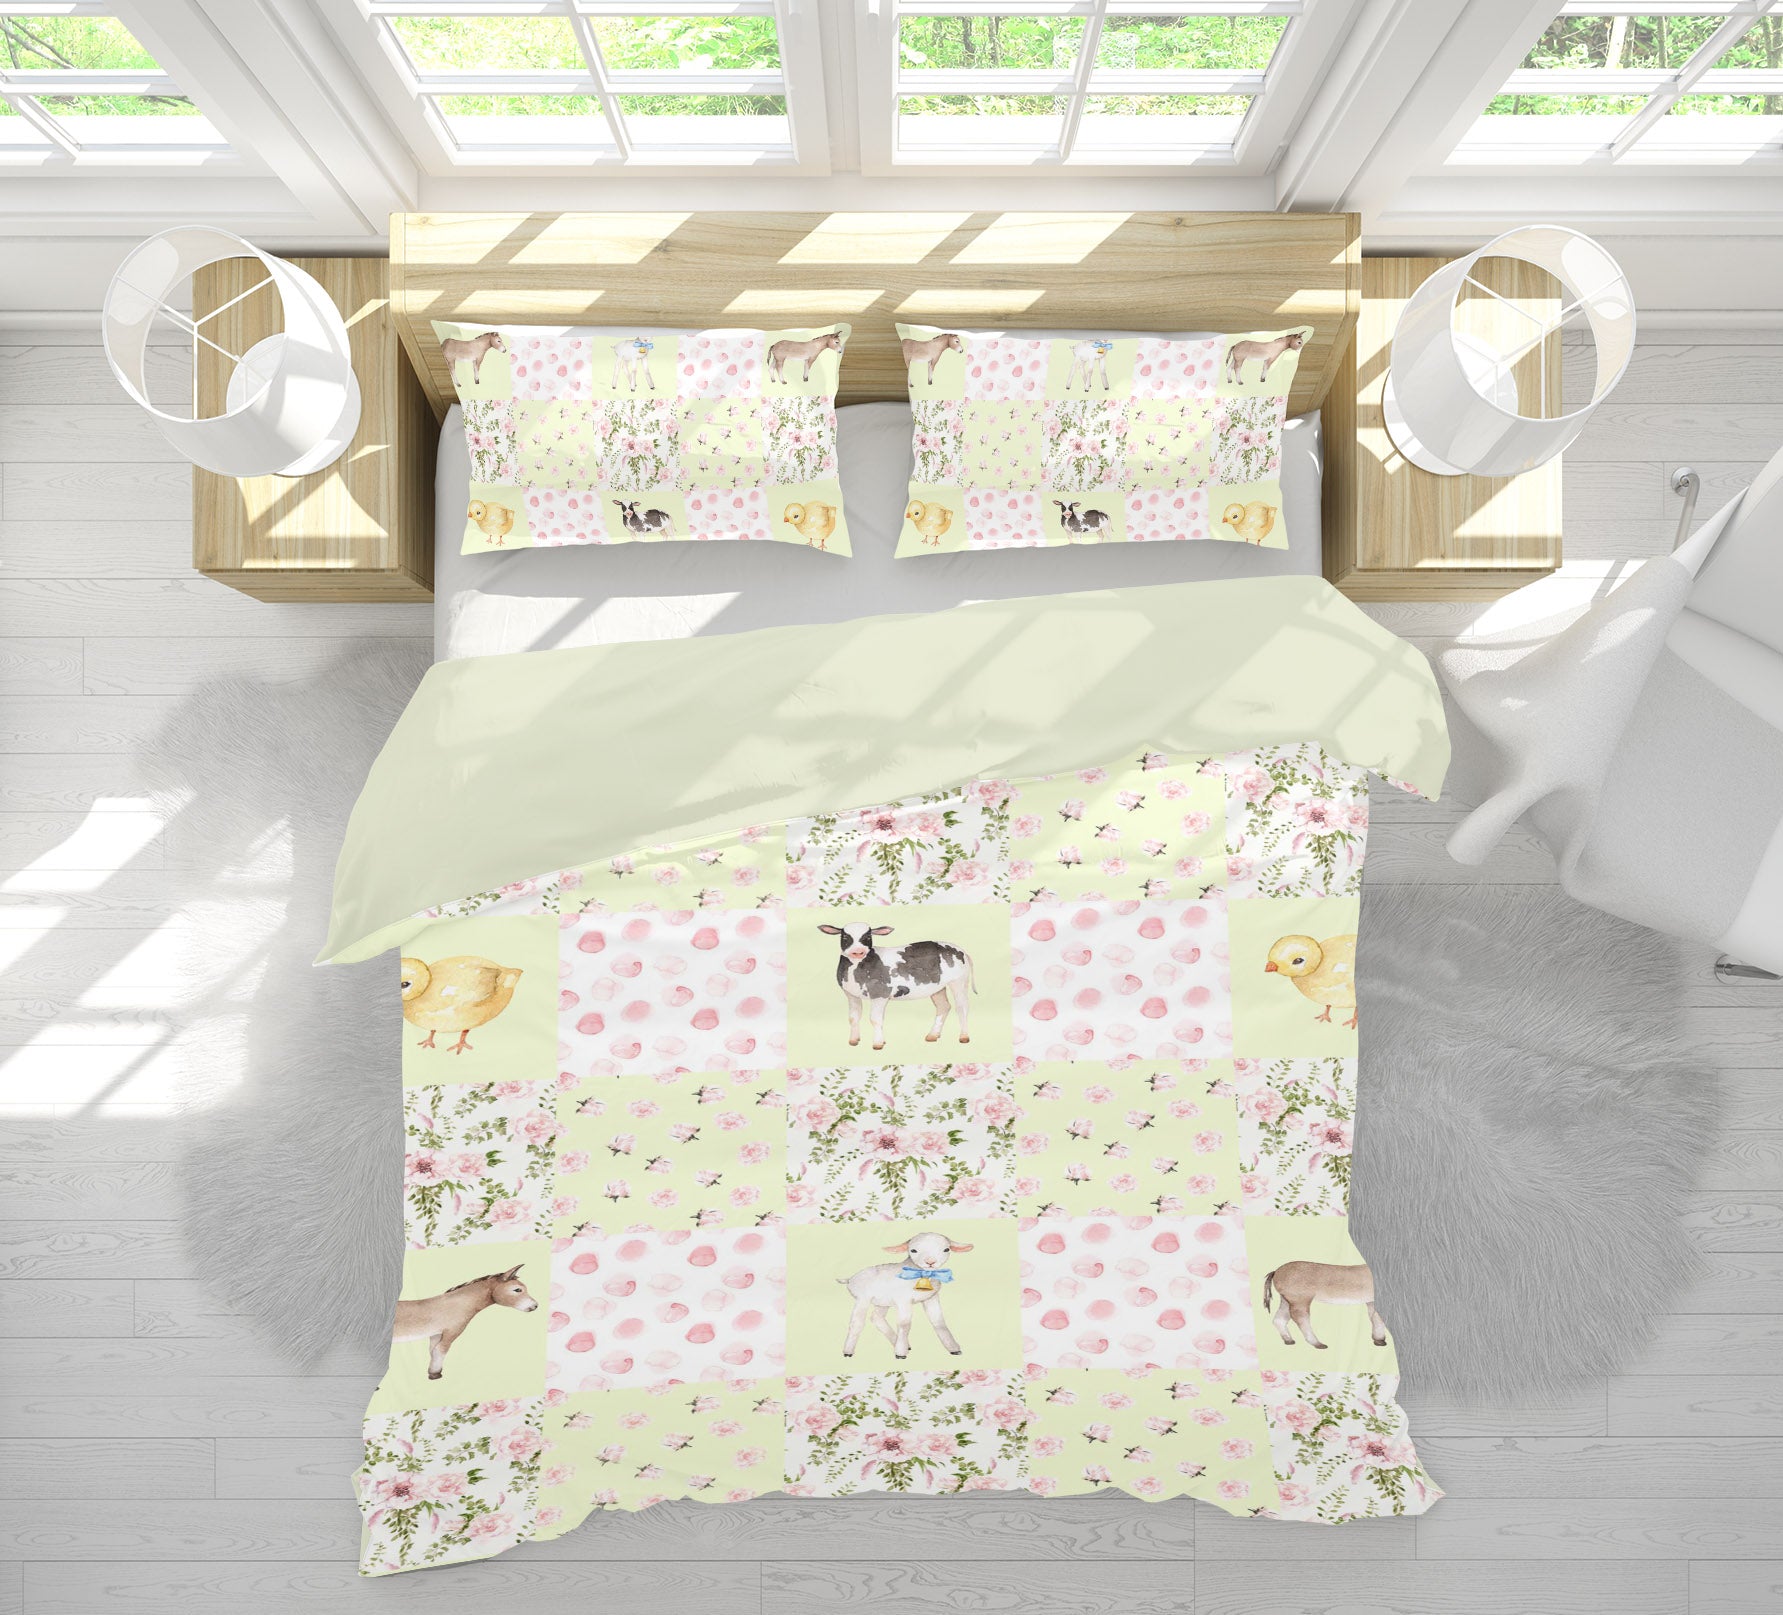 3D Cattle Chicken Sheep 201 Uta Naumann Bedding Bed Pillowcases Quilt